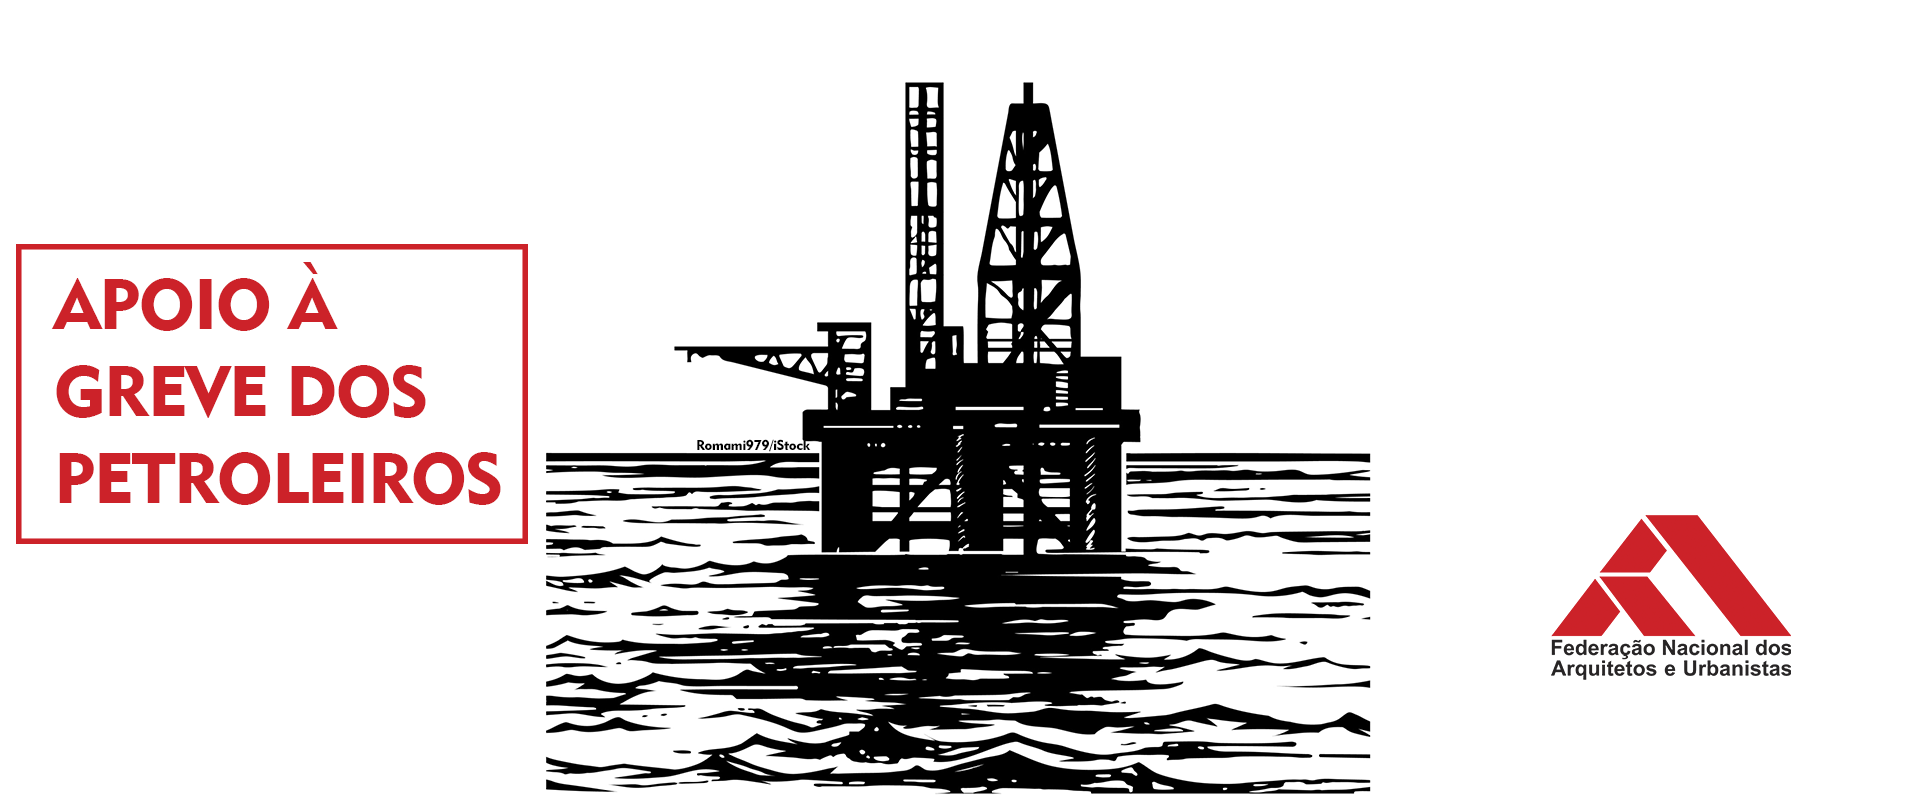 FNA: Nota de apoio à greve dos petroleiros